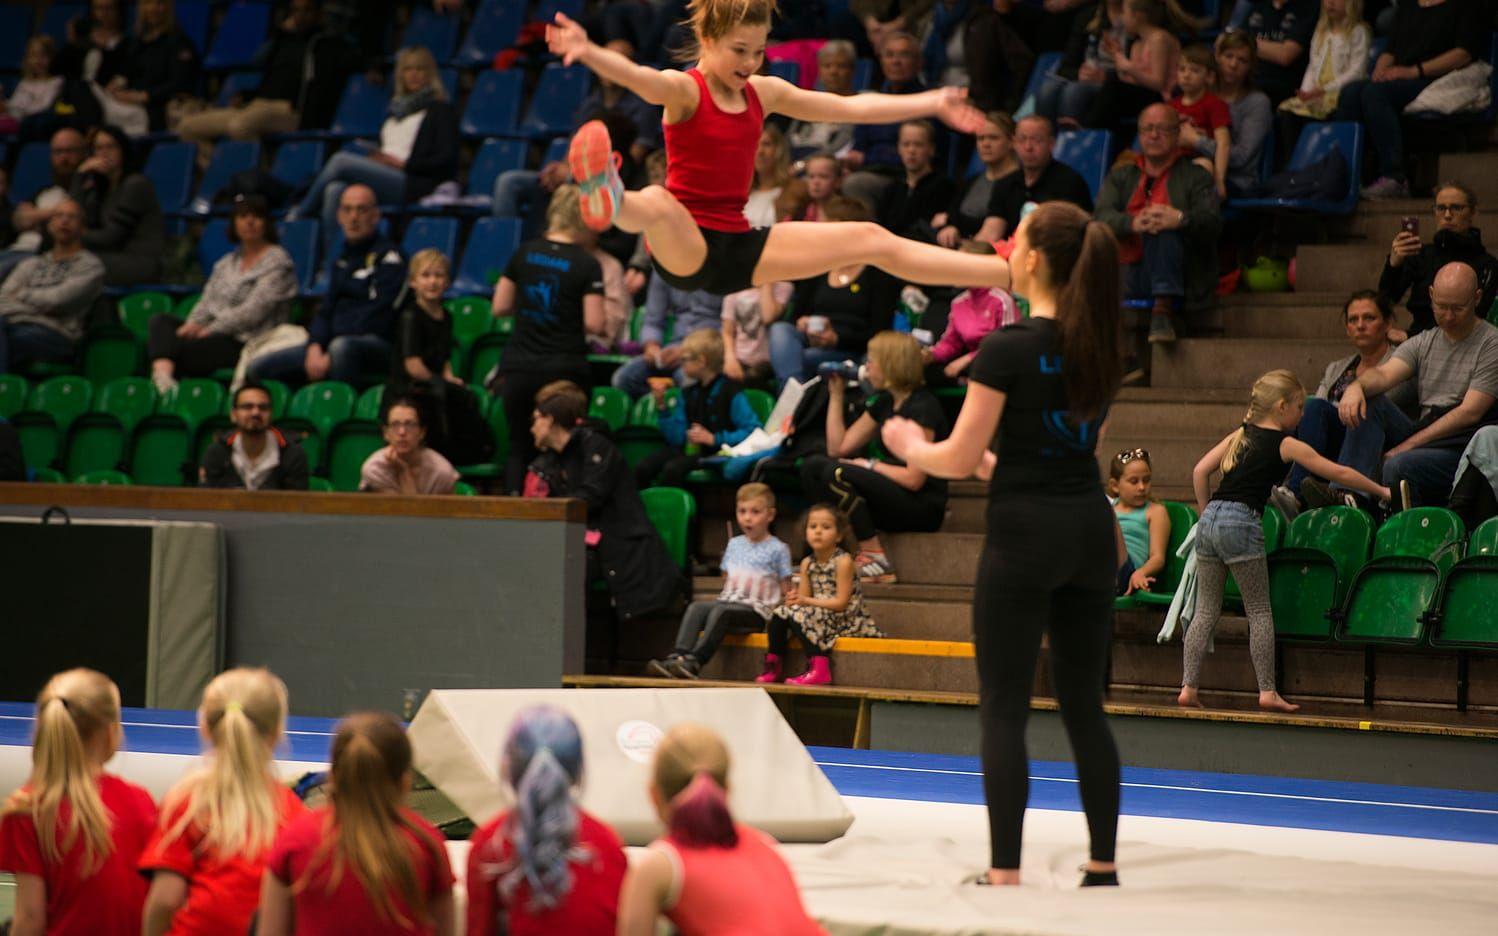 En del gymnaster flög riktigt högt. Bilder: Johanna Josephsson